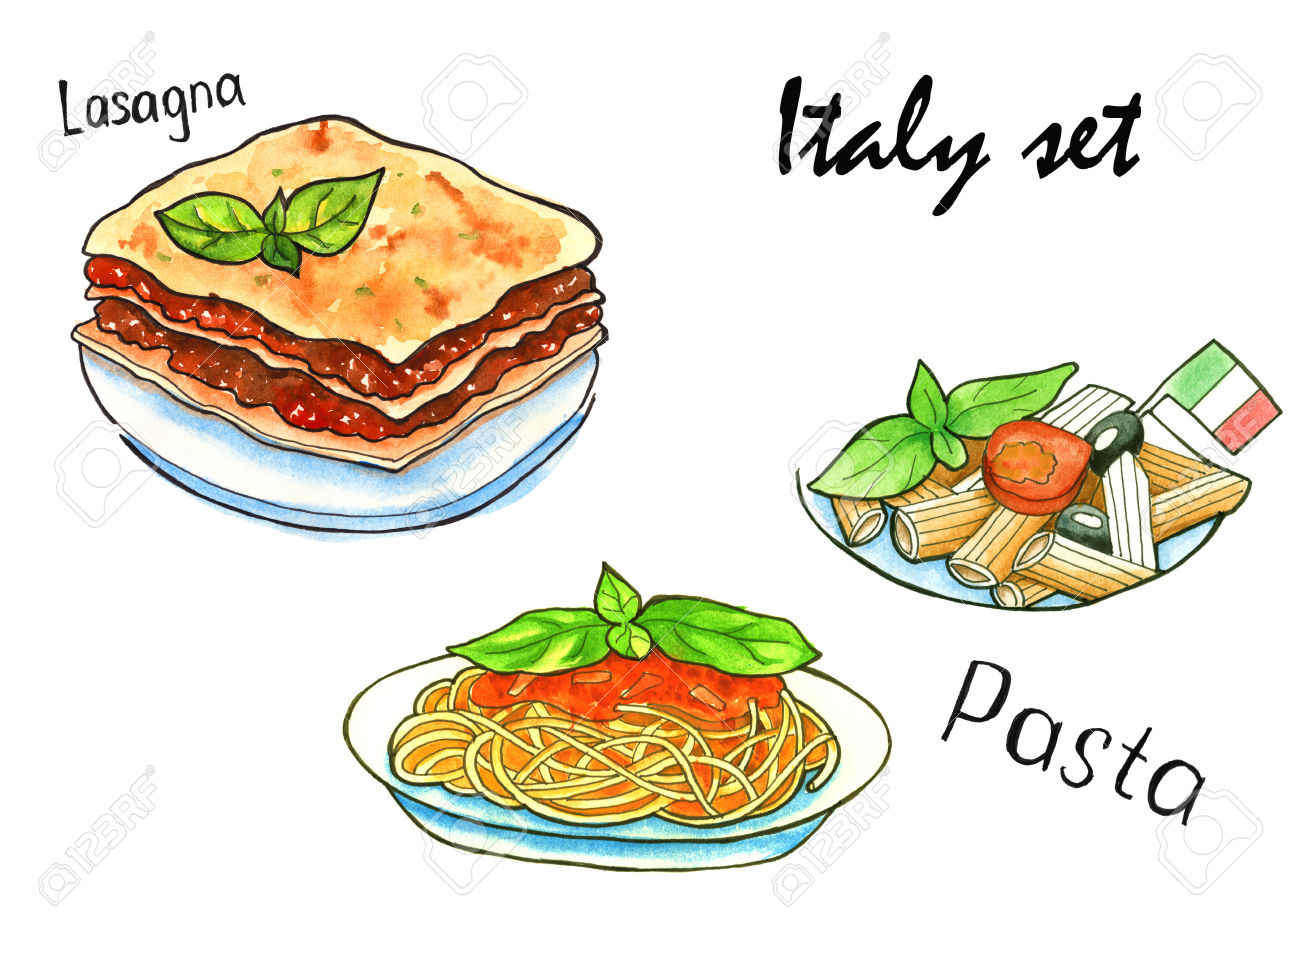 italy clipart lasagna italian